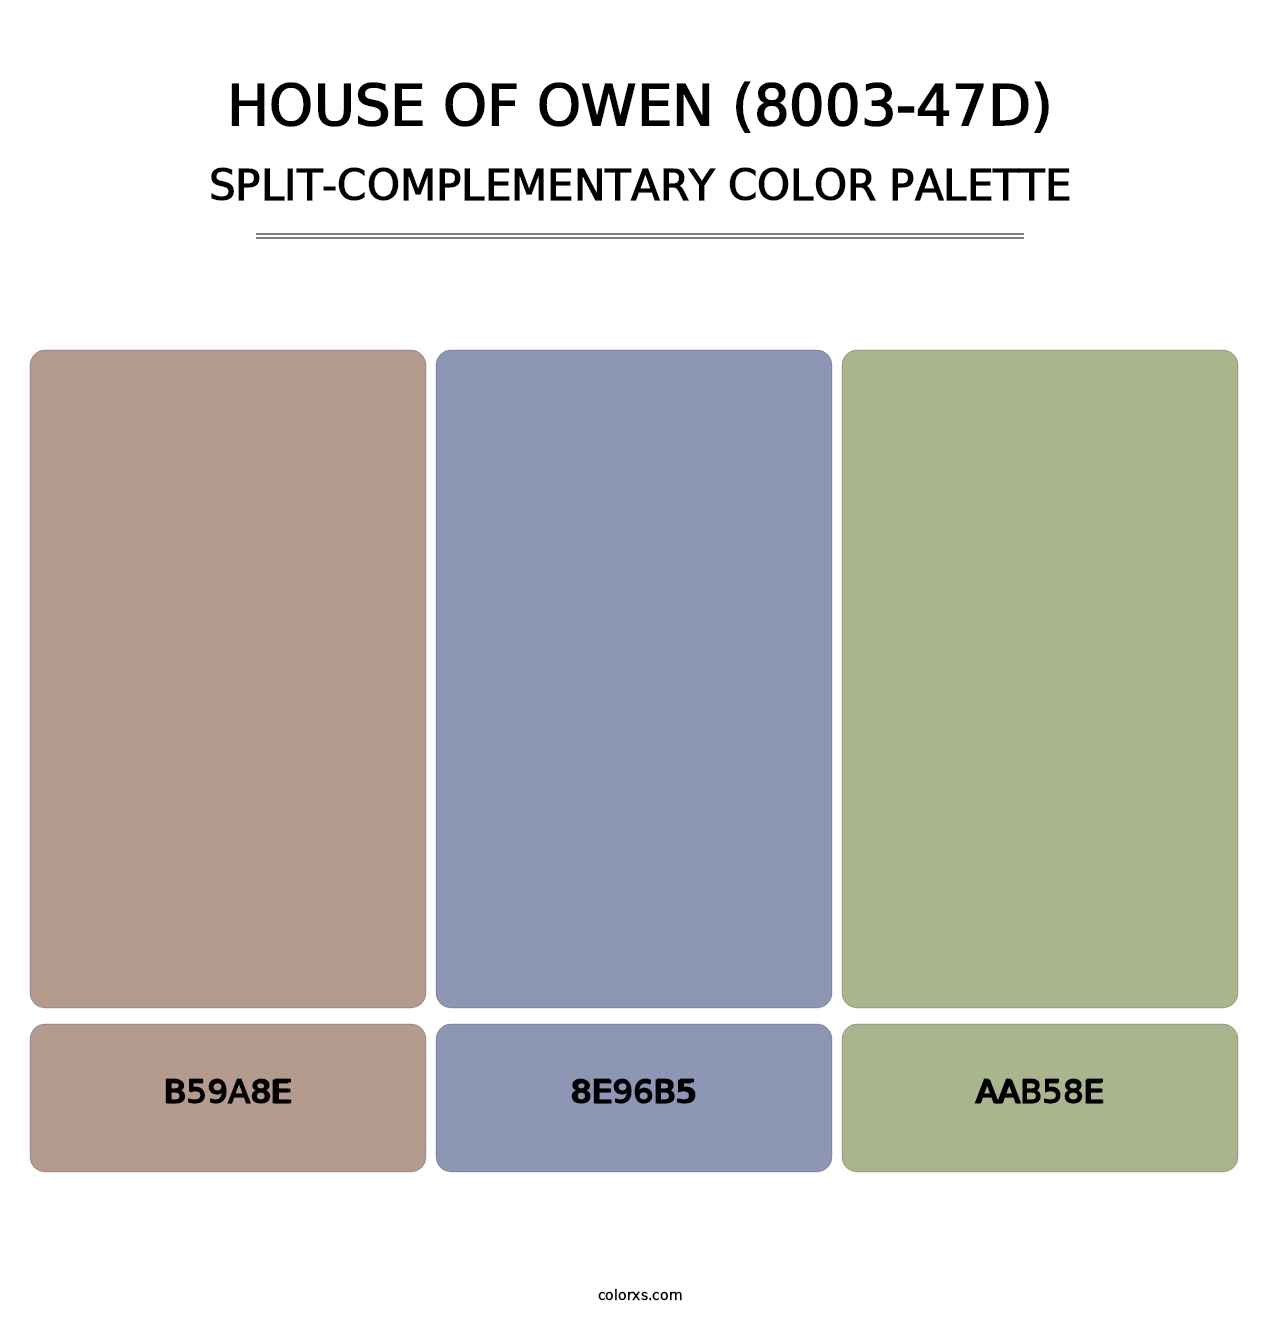 House of Owen (8003-47D) - Split-Complementary Color Palette